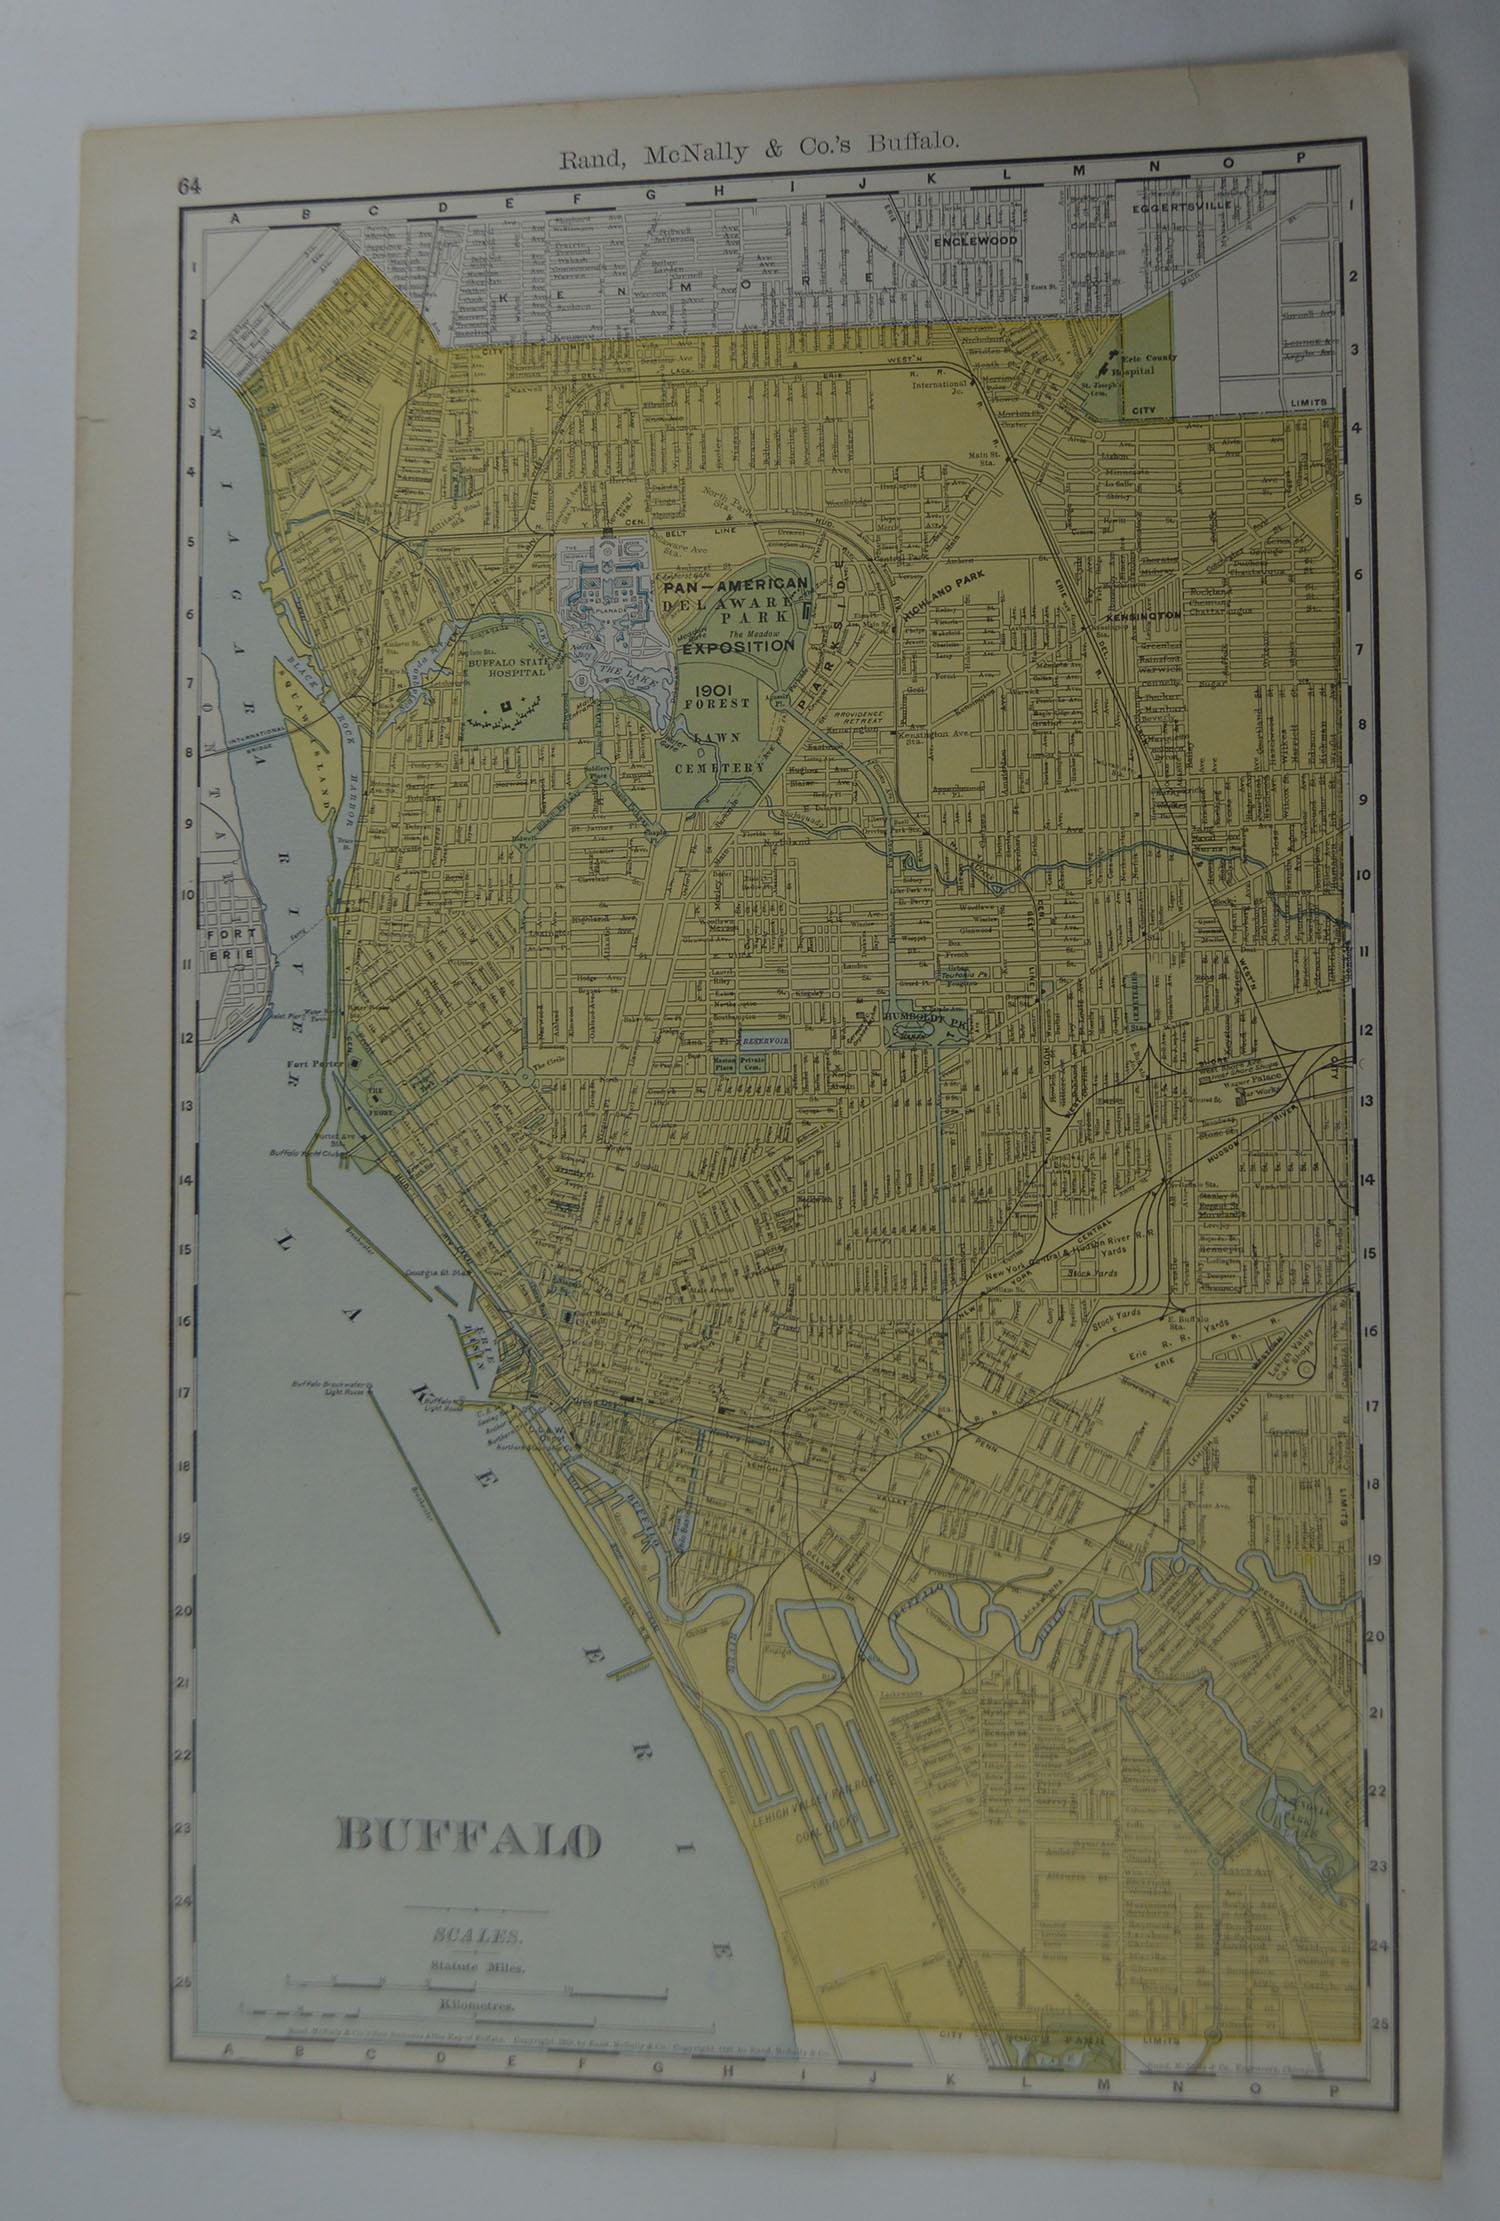 Other Original Antique City Plan of Buffalo, New York, USA, circa 1900